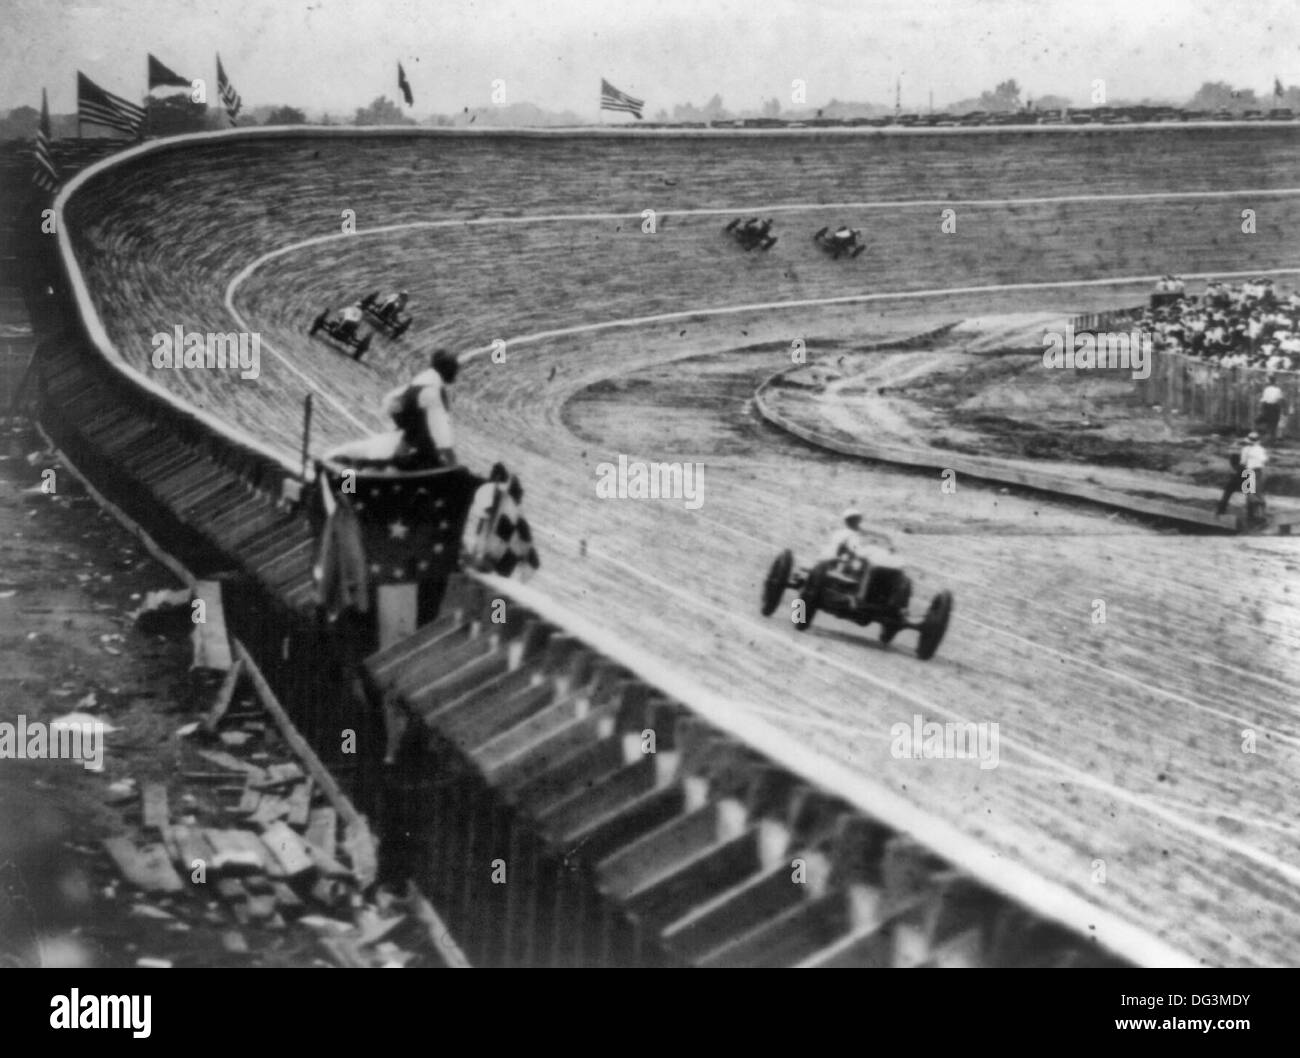 Automobile Racing en pista de madera curvada, probablemente en o cerca de Washington, D.C., con bandera hombre en primer plano, circa 1922 Foto de stock